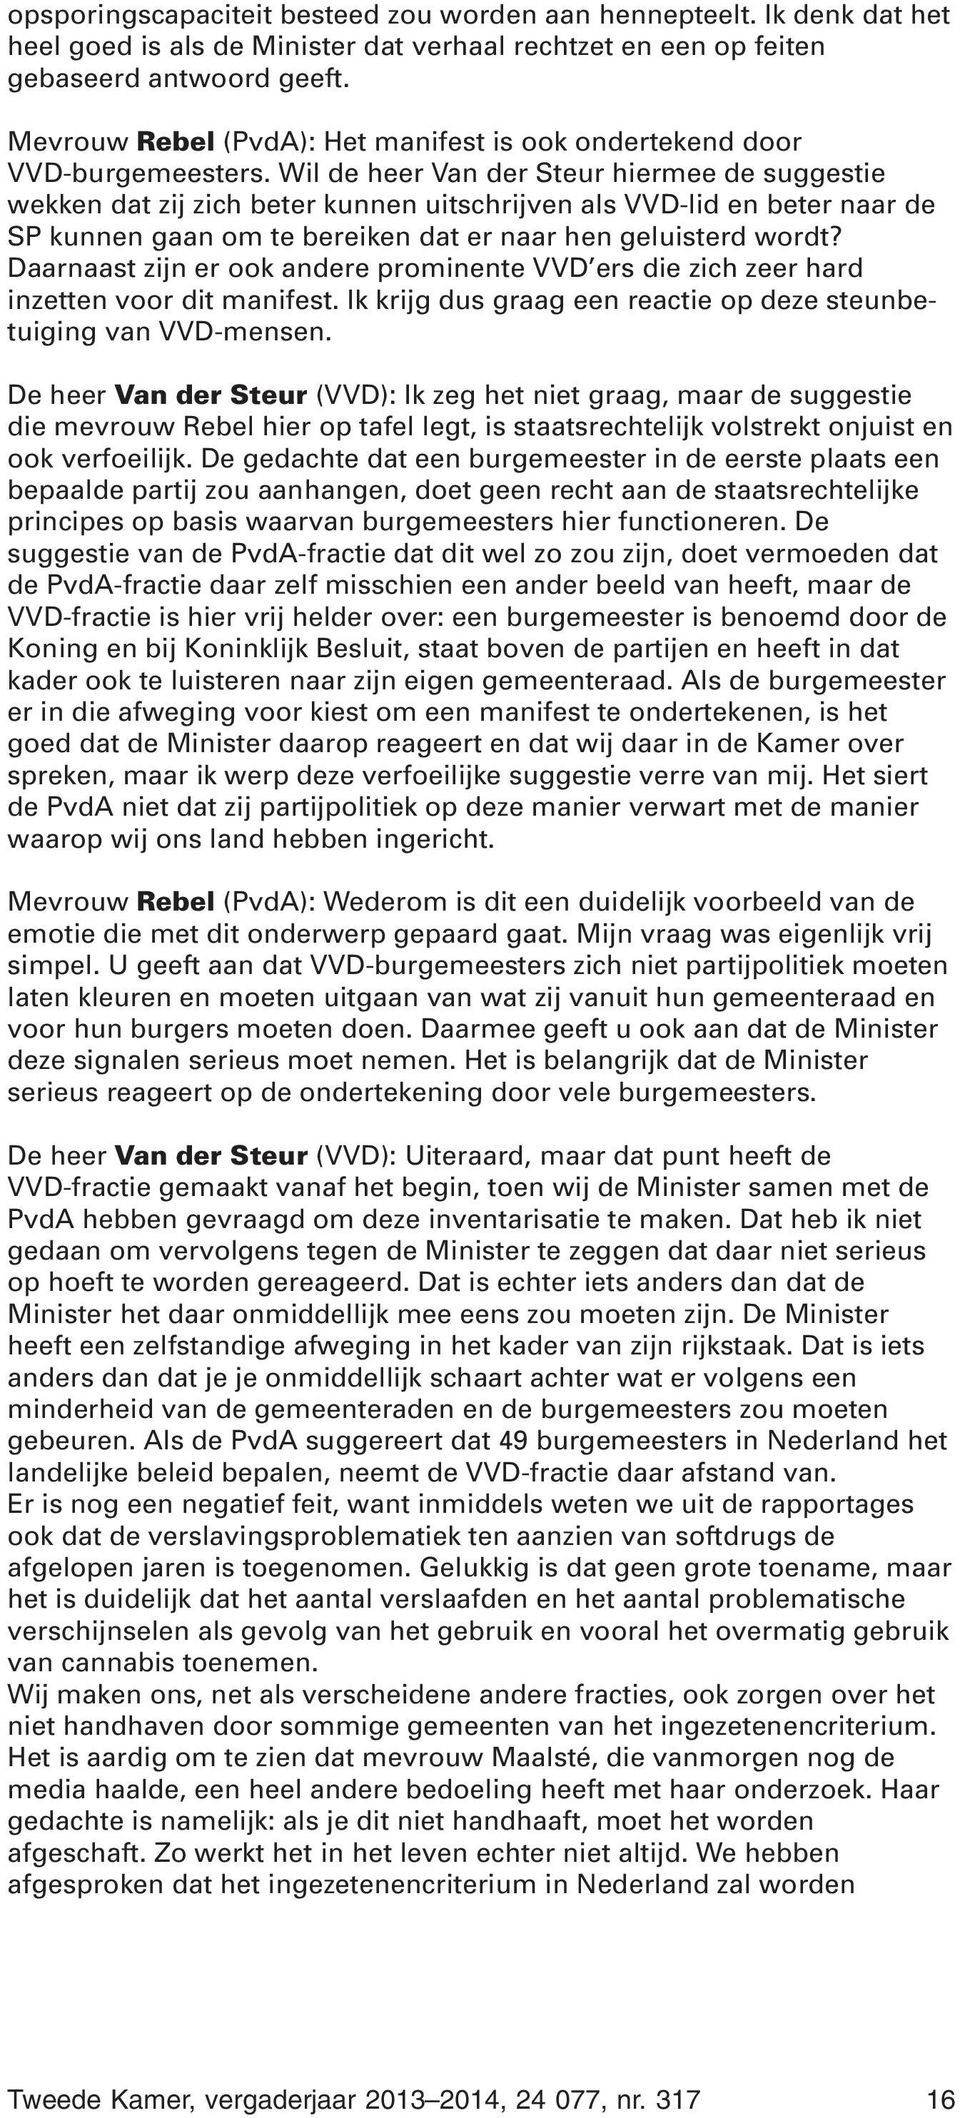 Wil de heer Van der Steur hiermee de suggestie wekken dat zij zich beter kunnen uitschrijven als VVD-lid en beter naar de SP kunnen gaan om te bereiken dat er naar hen geluisterd wordt?